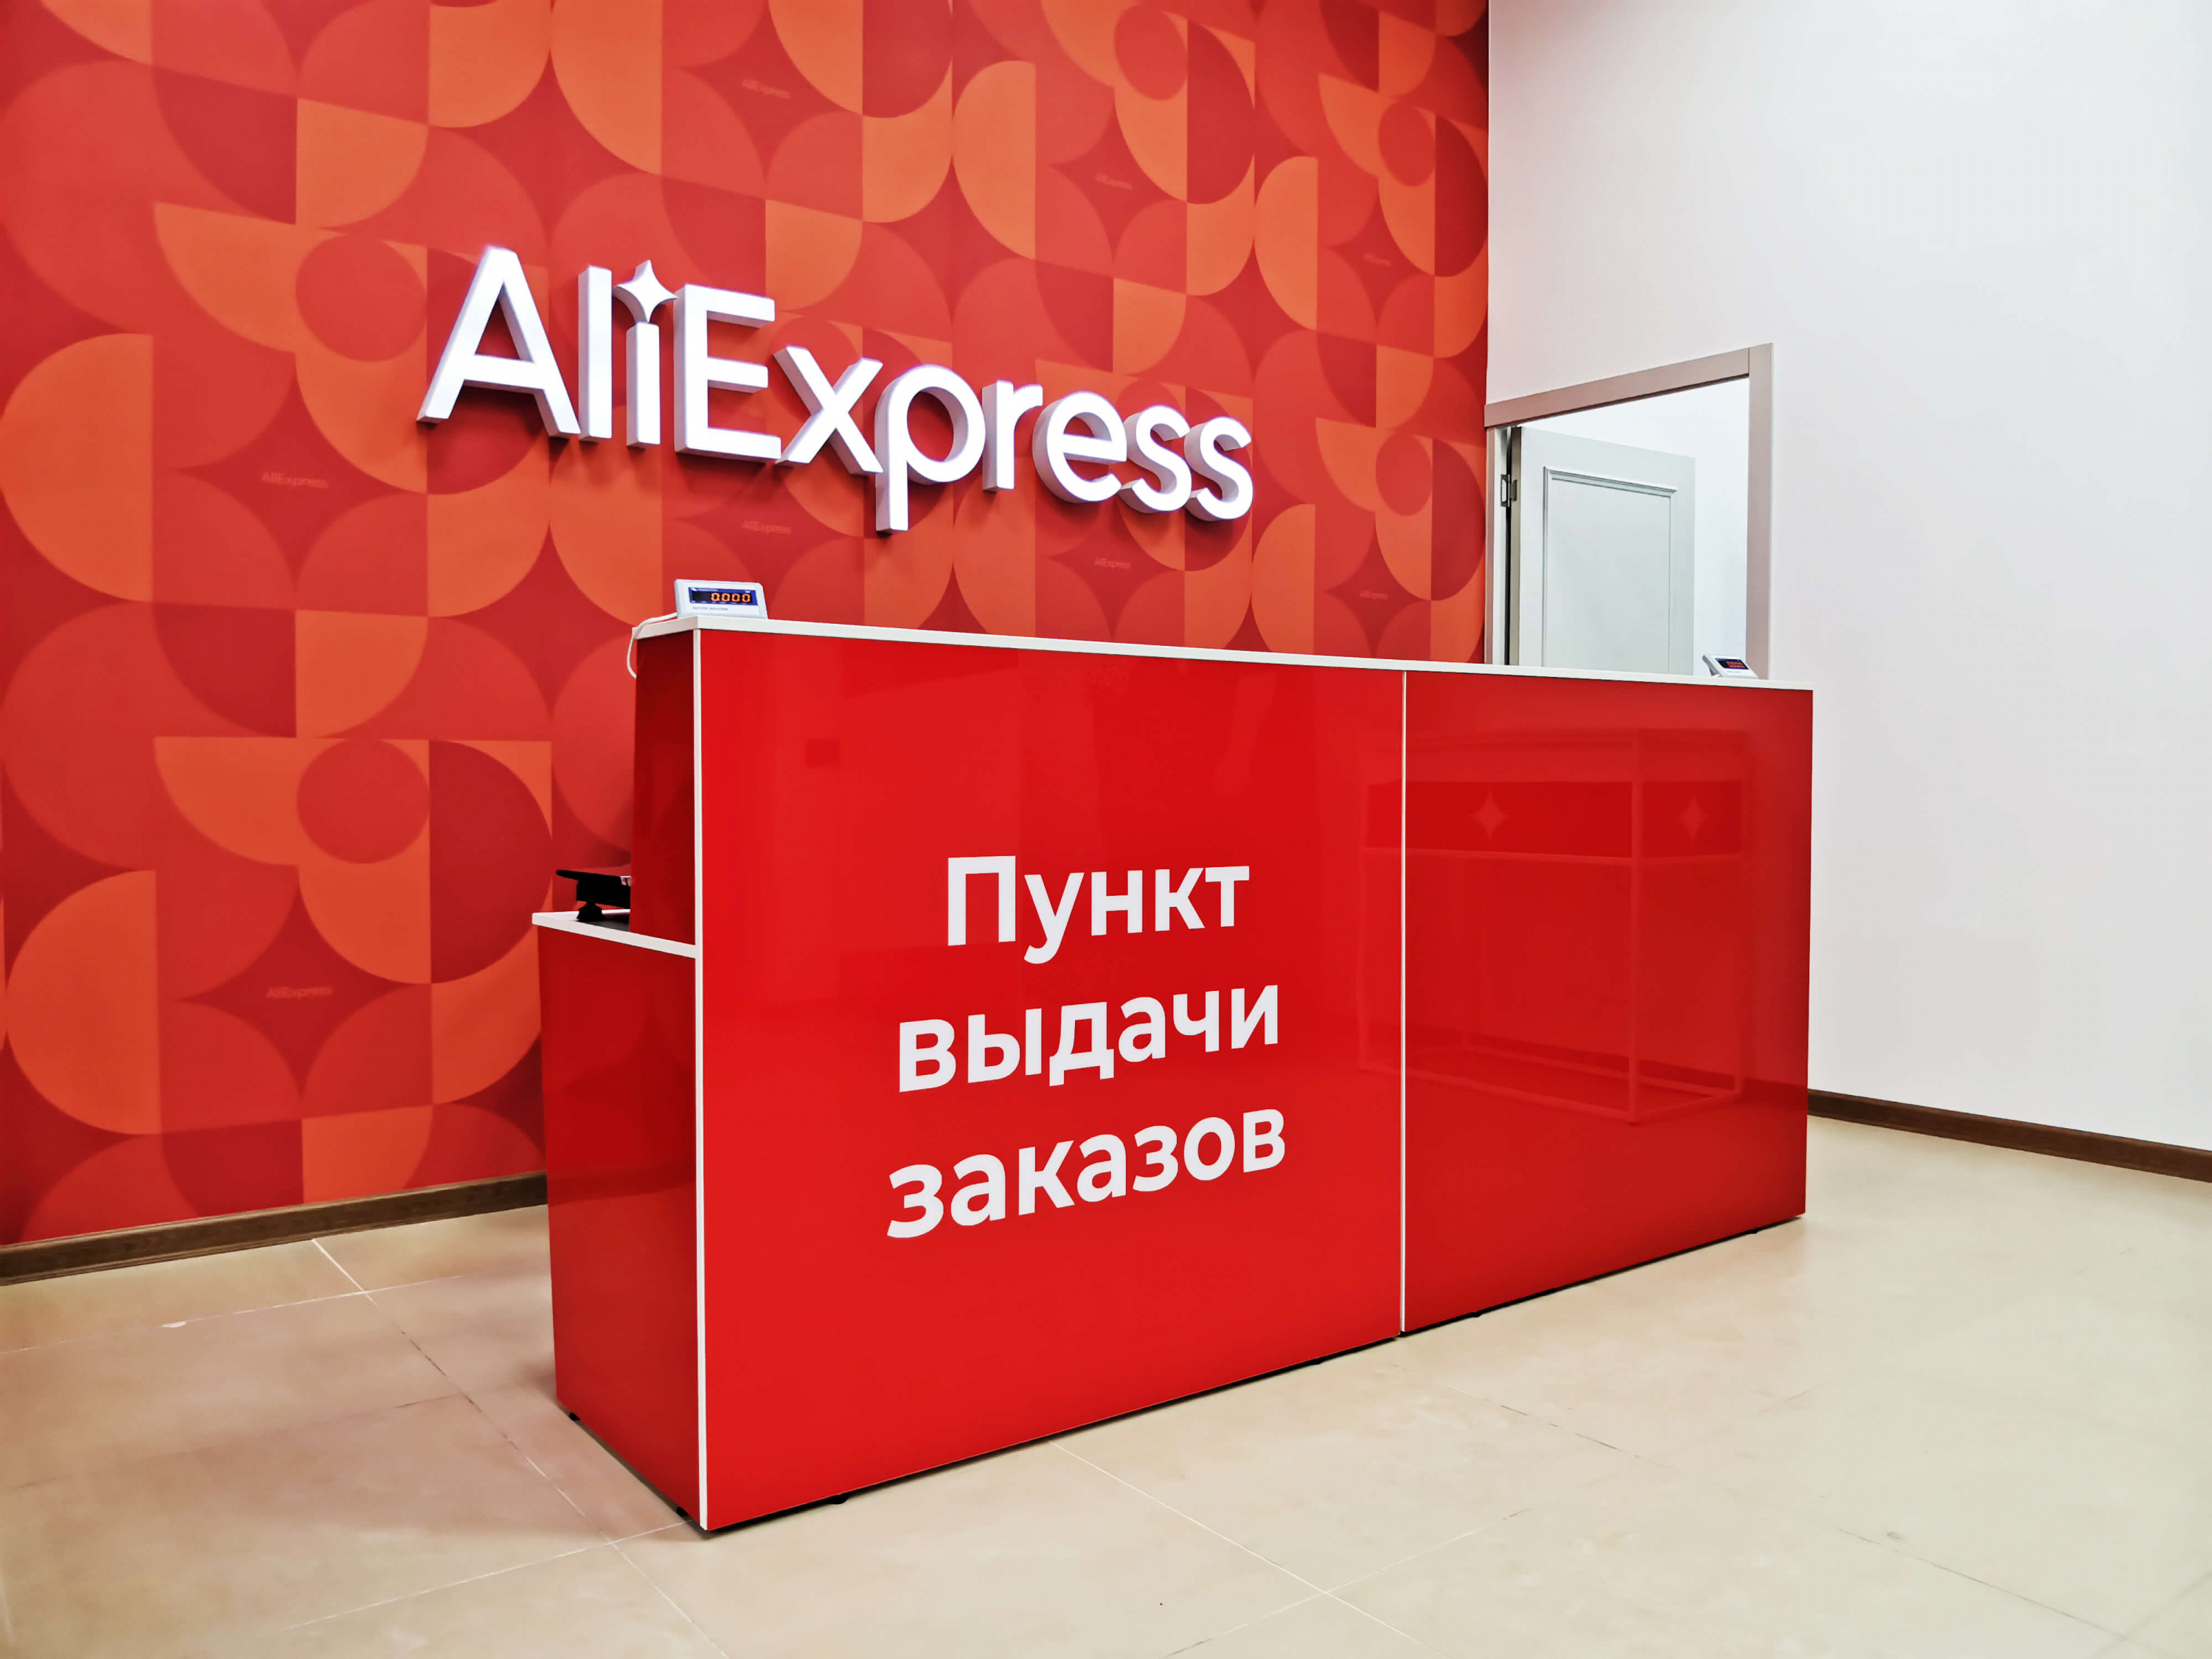 AliExpress Россия» сократила штат на 50% – Новости ритейла и розничной  торговли 